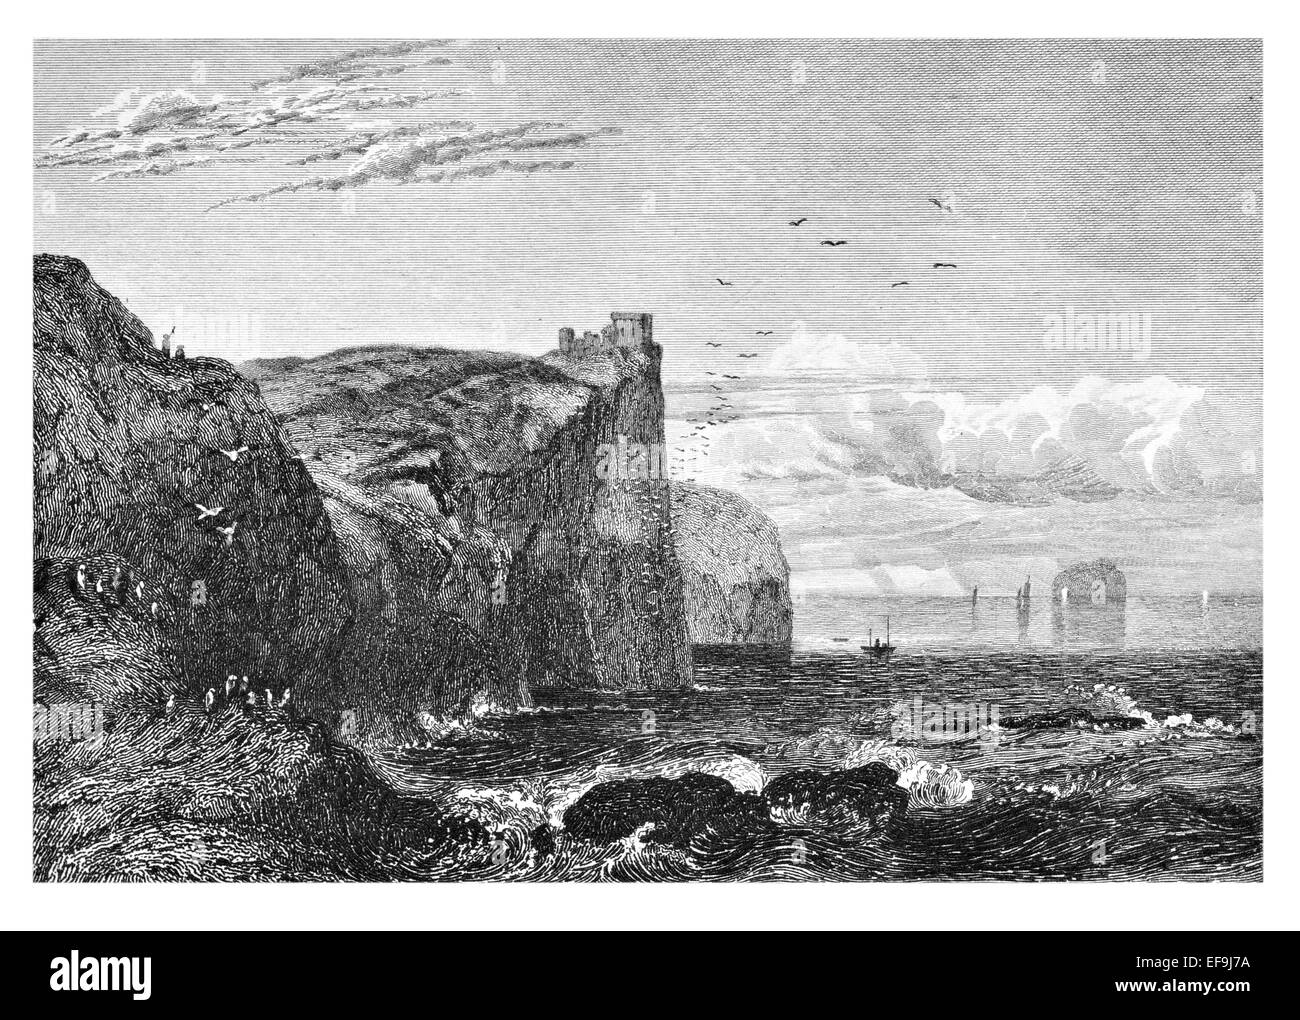 Imagen de Escocia por Robert Chambers publicado en 1837 Fast castillo fortaleza costera Berwickshire, sudeste de Escocia Foto de stock